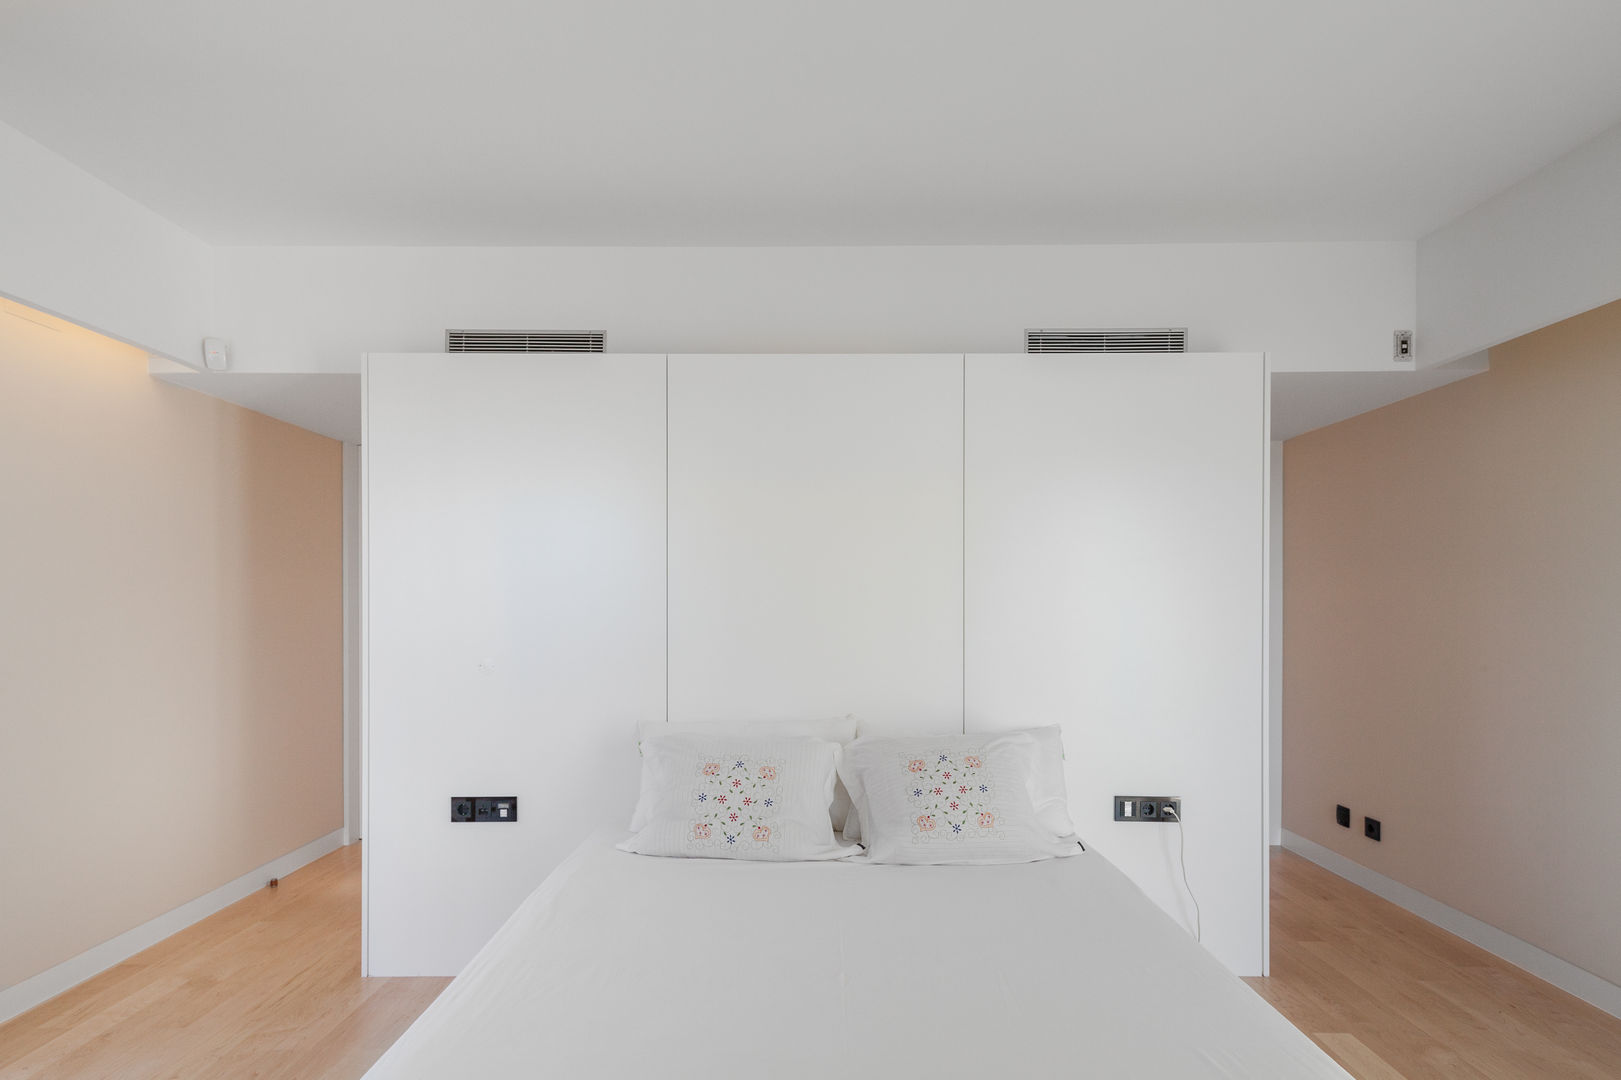 Four villas condominium in Queijas, Oeiras, Estúdio Urbano Arquitectos Estúdio Urbano Arquitectos Dormitorios minimalistas